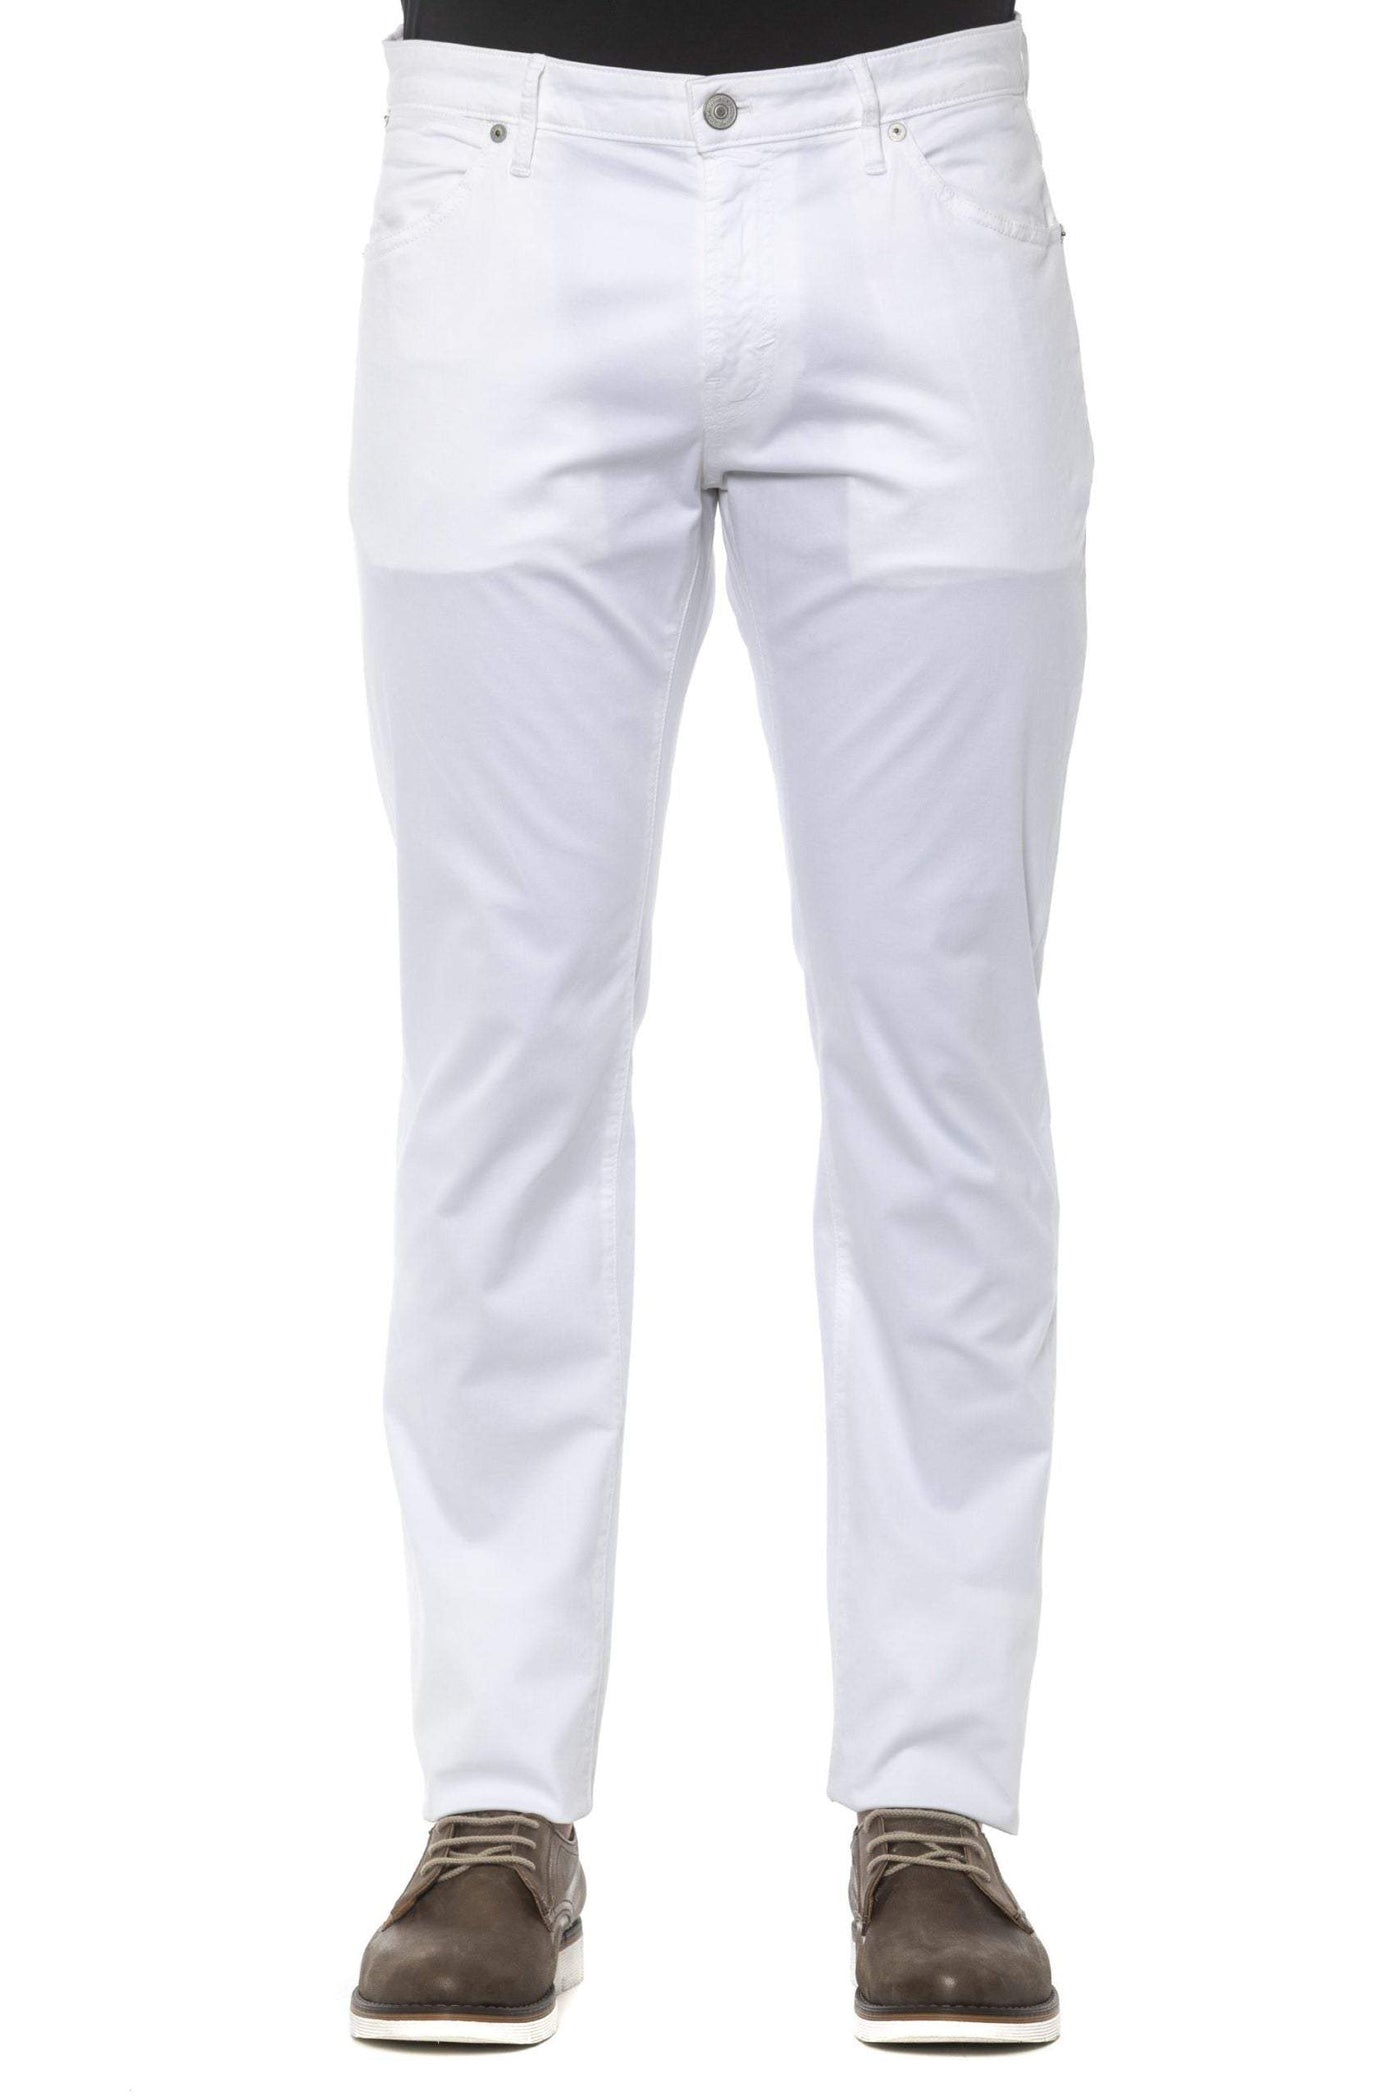 PT Torino White Cotton Jeans & Pant #men, feed-1, Jeans & Pants - Men - Clothing, PT Torino, W36, W38, White at SEYMAYKA